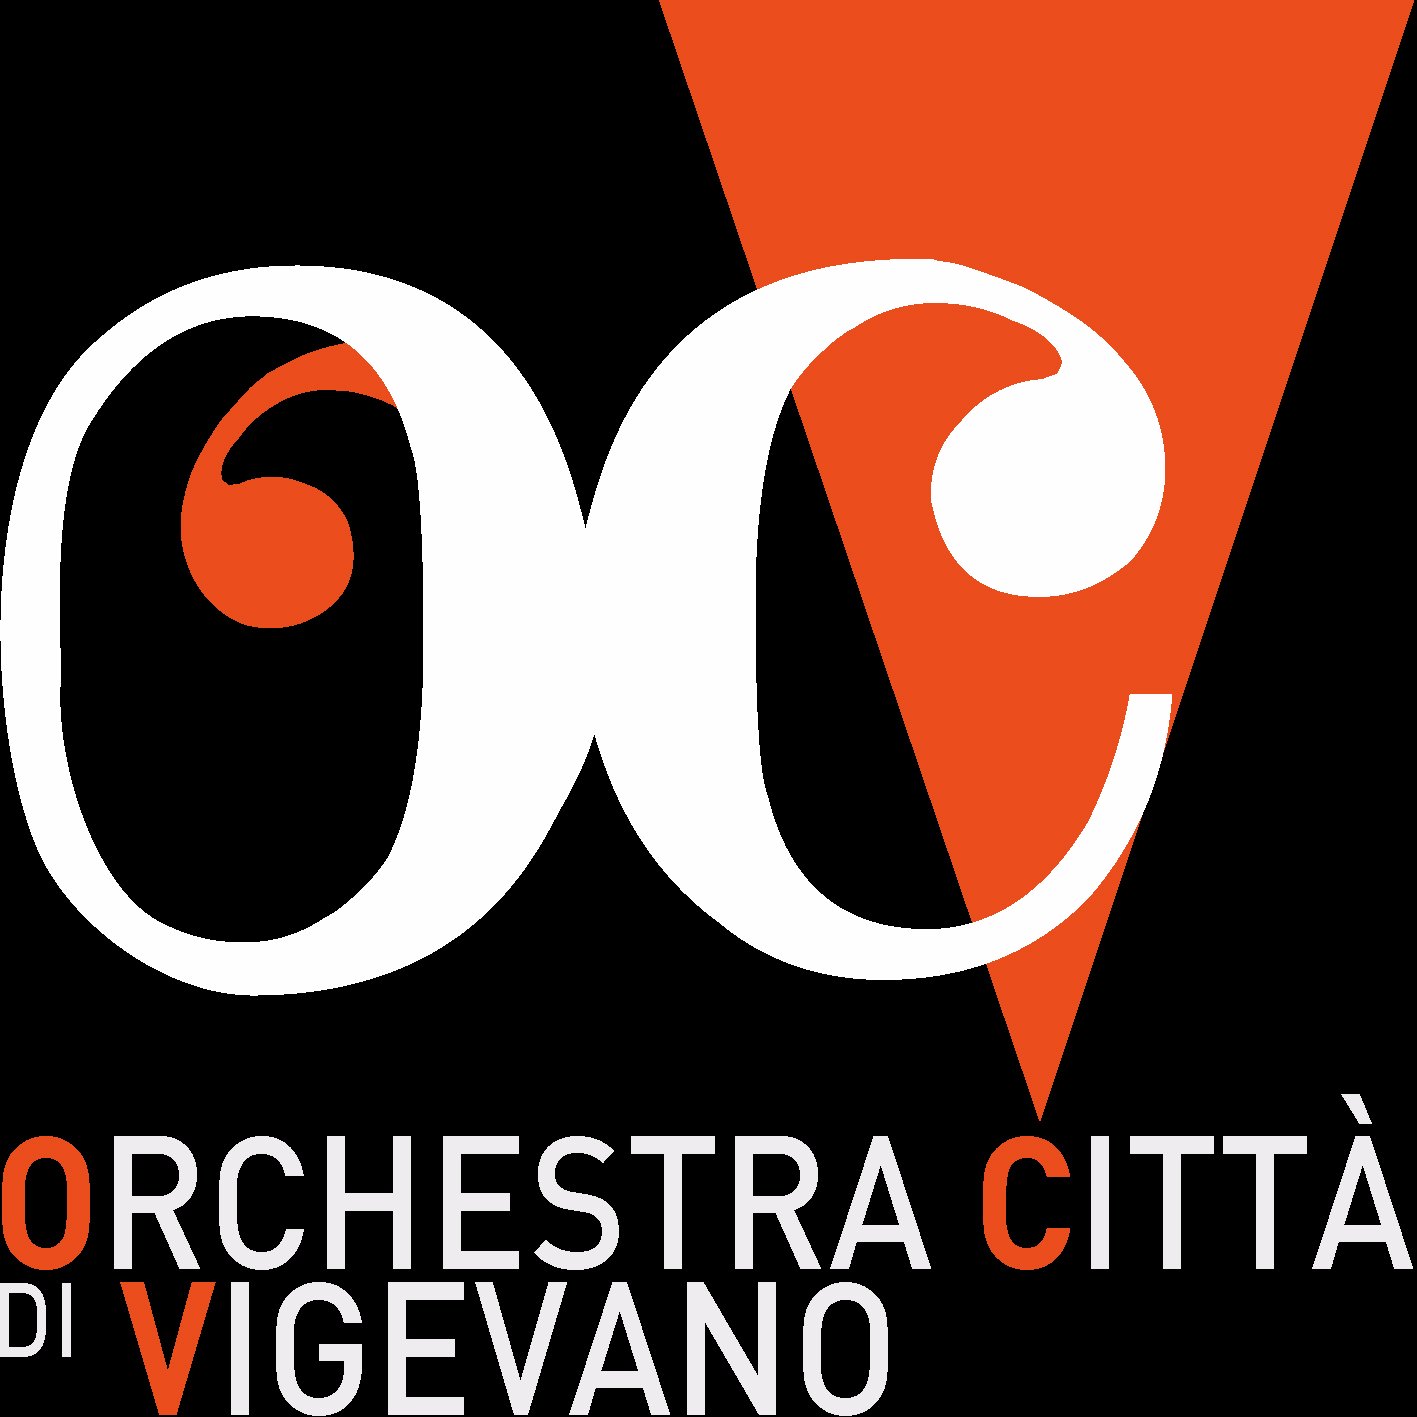 L’Orchestra Città di Vigevano è una realtà consolidata nel panorama culturale della città ed è protagonista della Stagione Musicale presso il Teatro Cagnoni